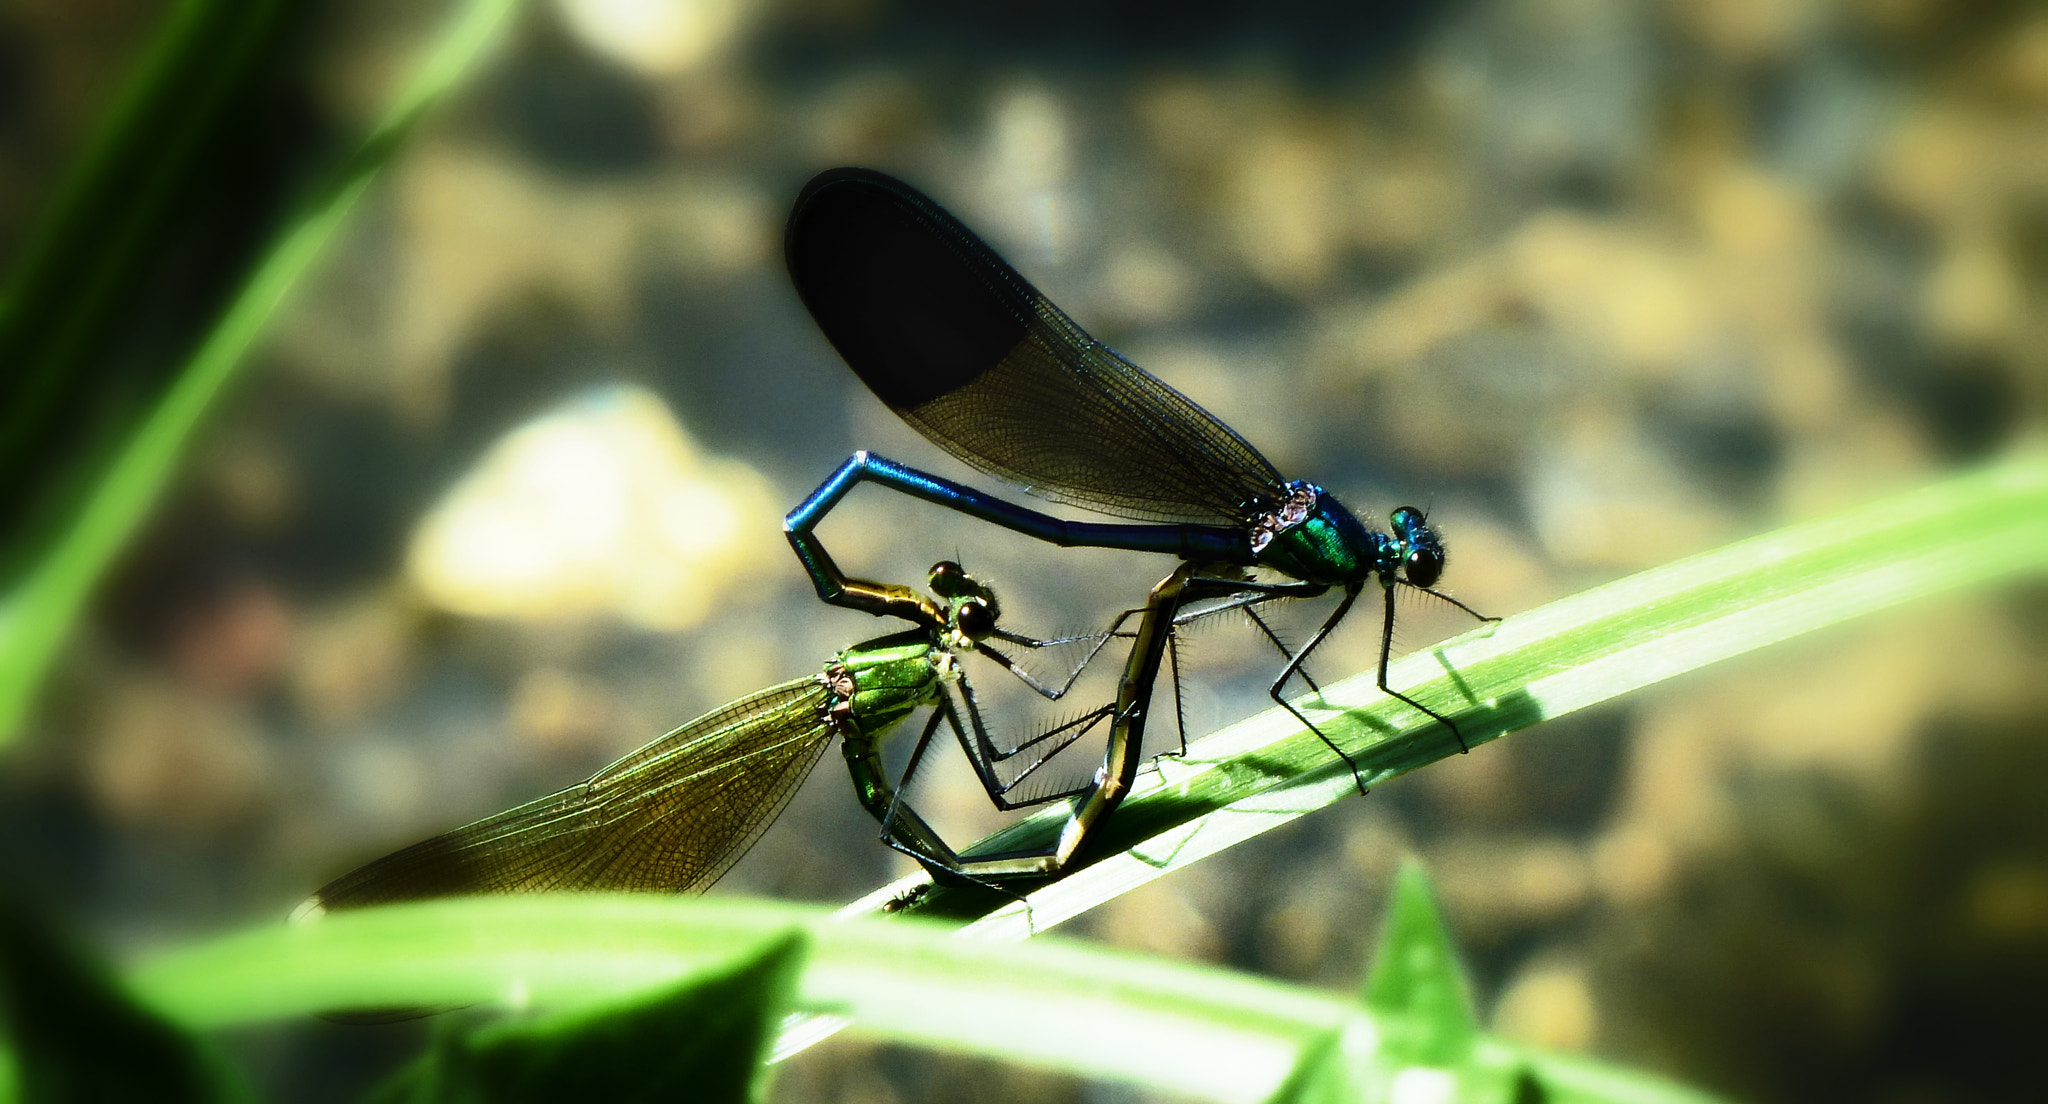 Panasonic Lumix DMC-ZS7 (Lumix DMC-TZ10) sample photo. Mating dragonflies. photography